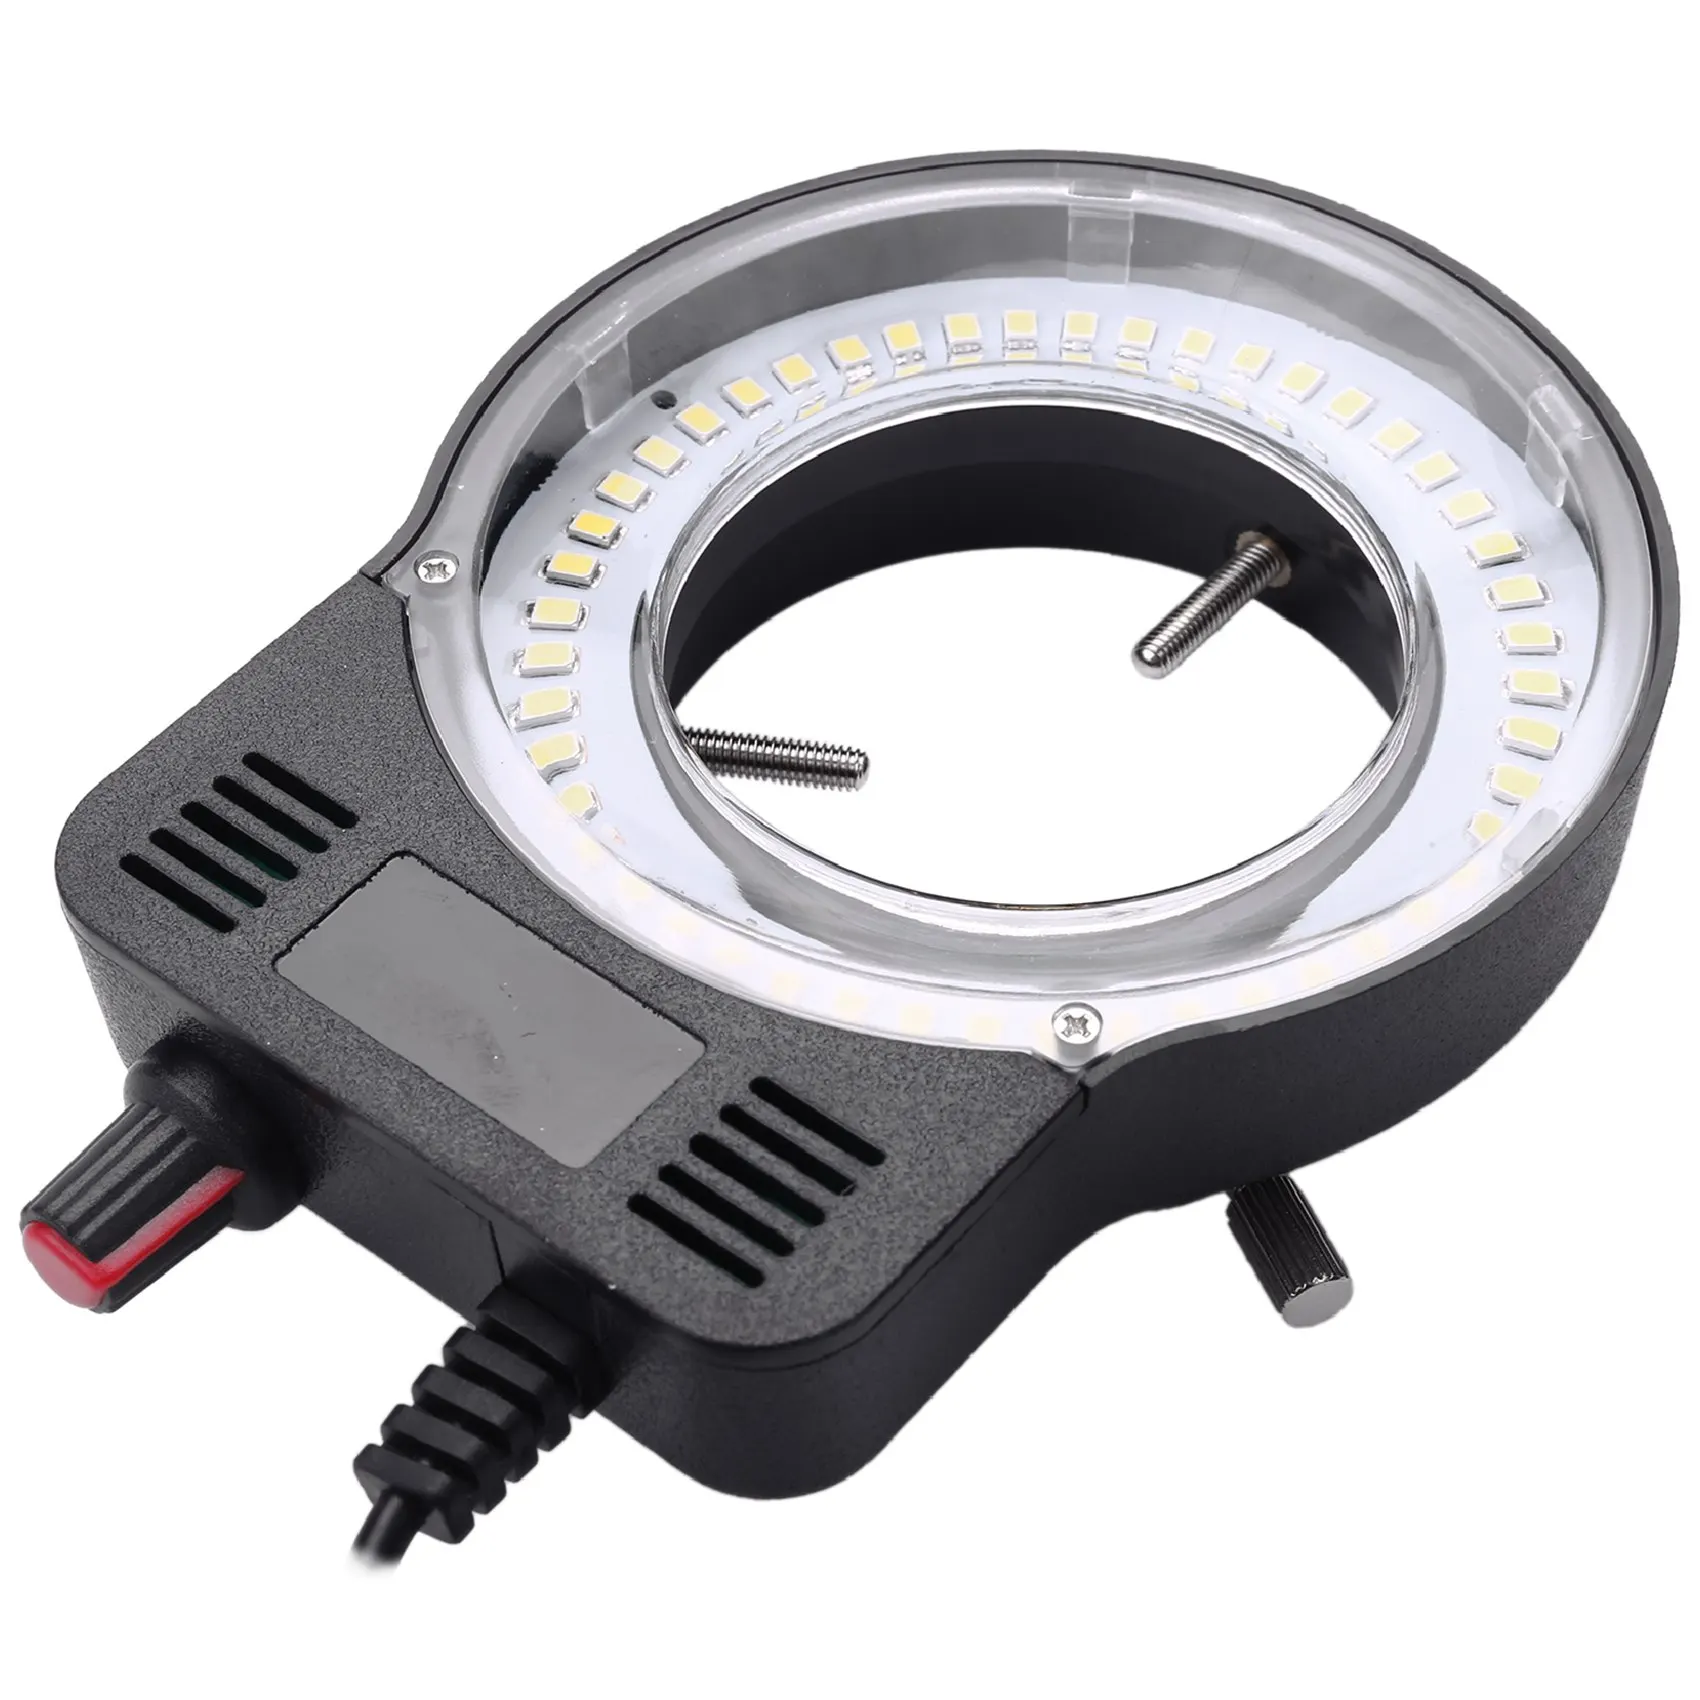 48 LED SMD USB מתכוונן טבעת אור המנורה המאיר עבור תעשיית מיקרוסקופ תעשייתי המצלמה מגדלת - 3